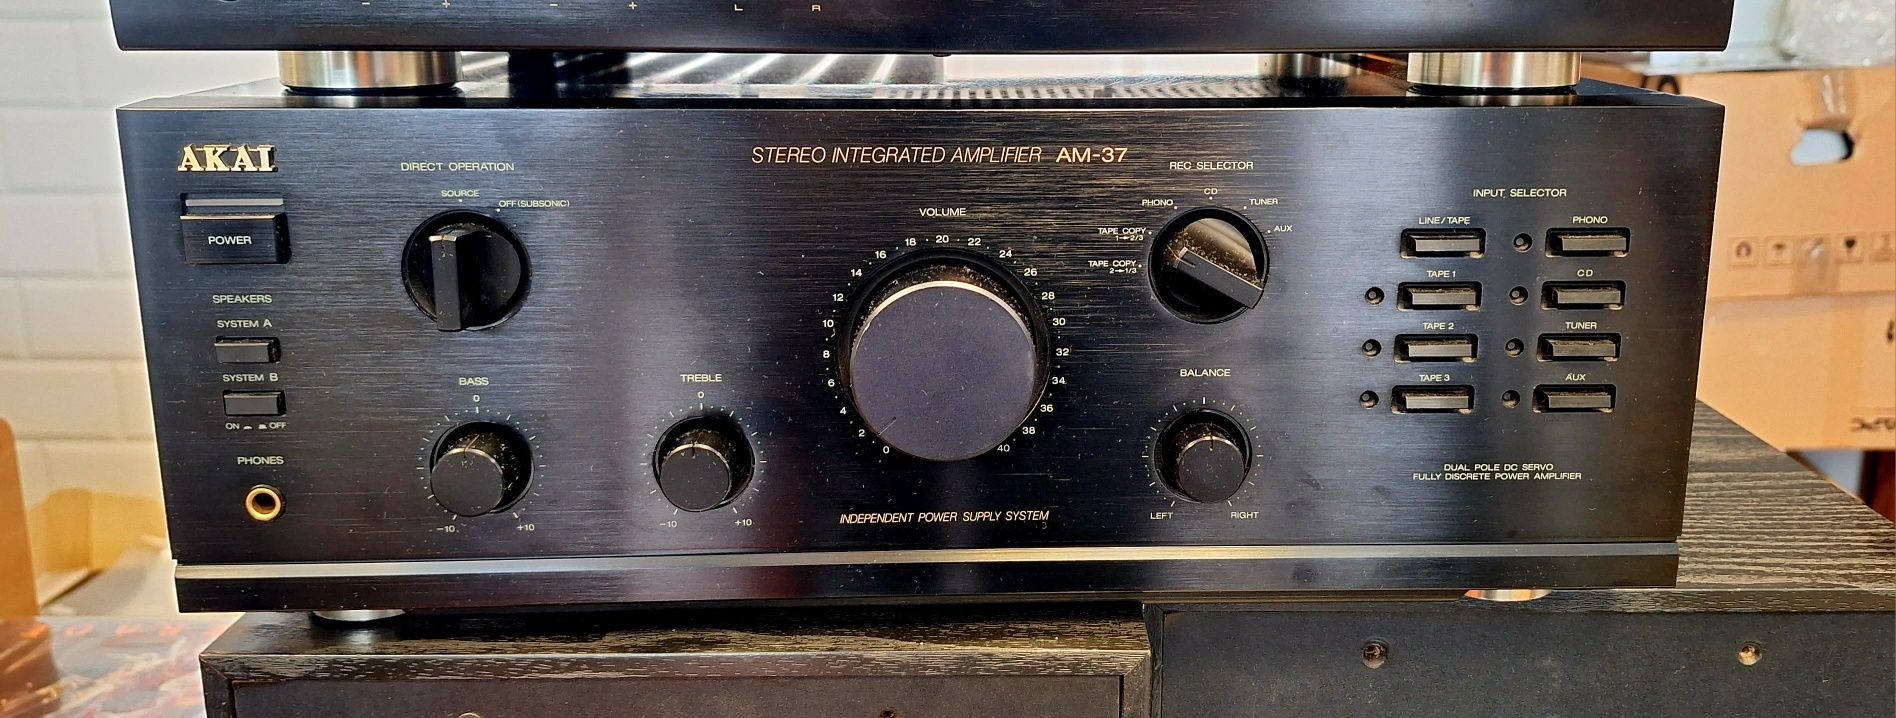 Akai AM-37 Wzmacniacz Stereo. St. B.dobry. Audio Vintage Pruszków